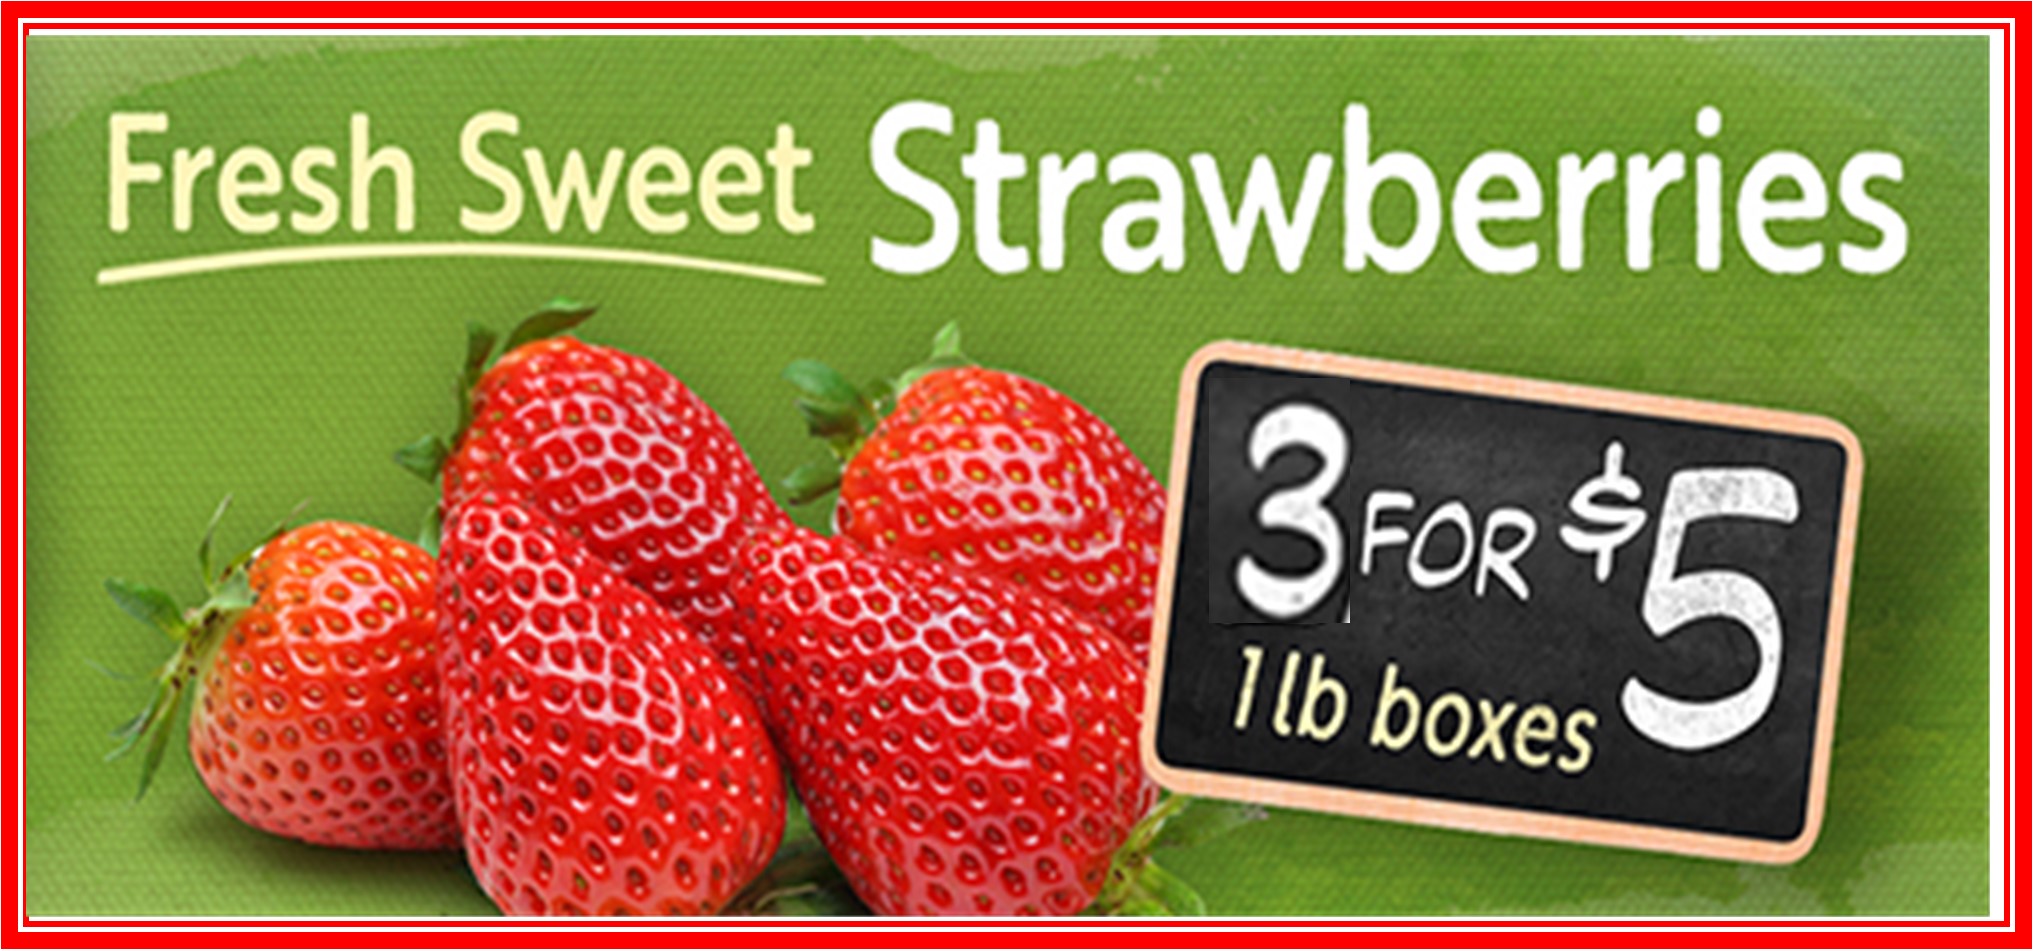 Strawberries 3 for 5.jpg